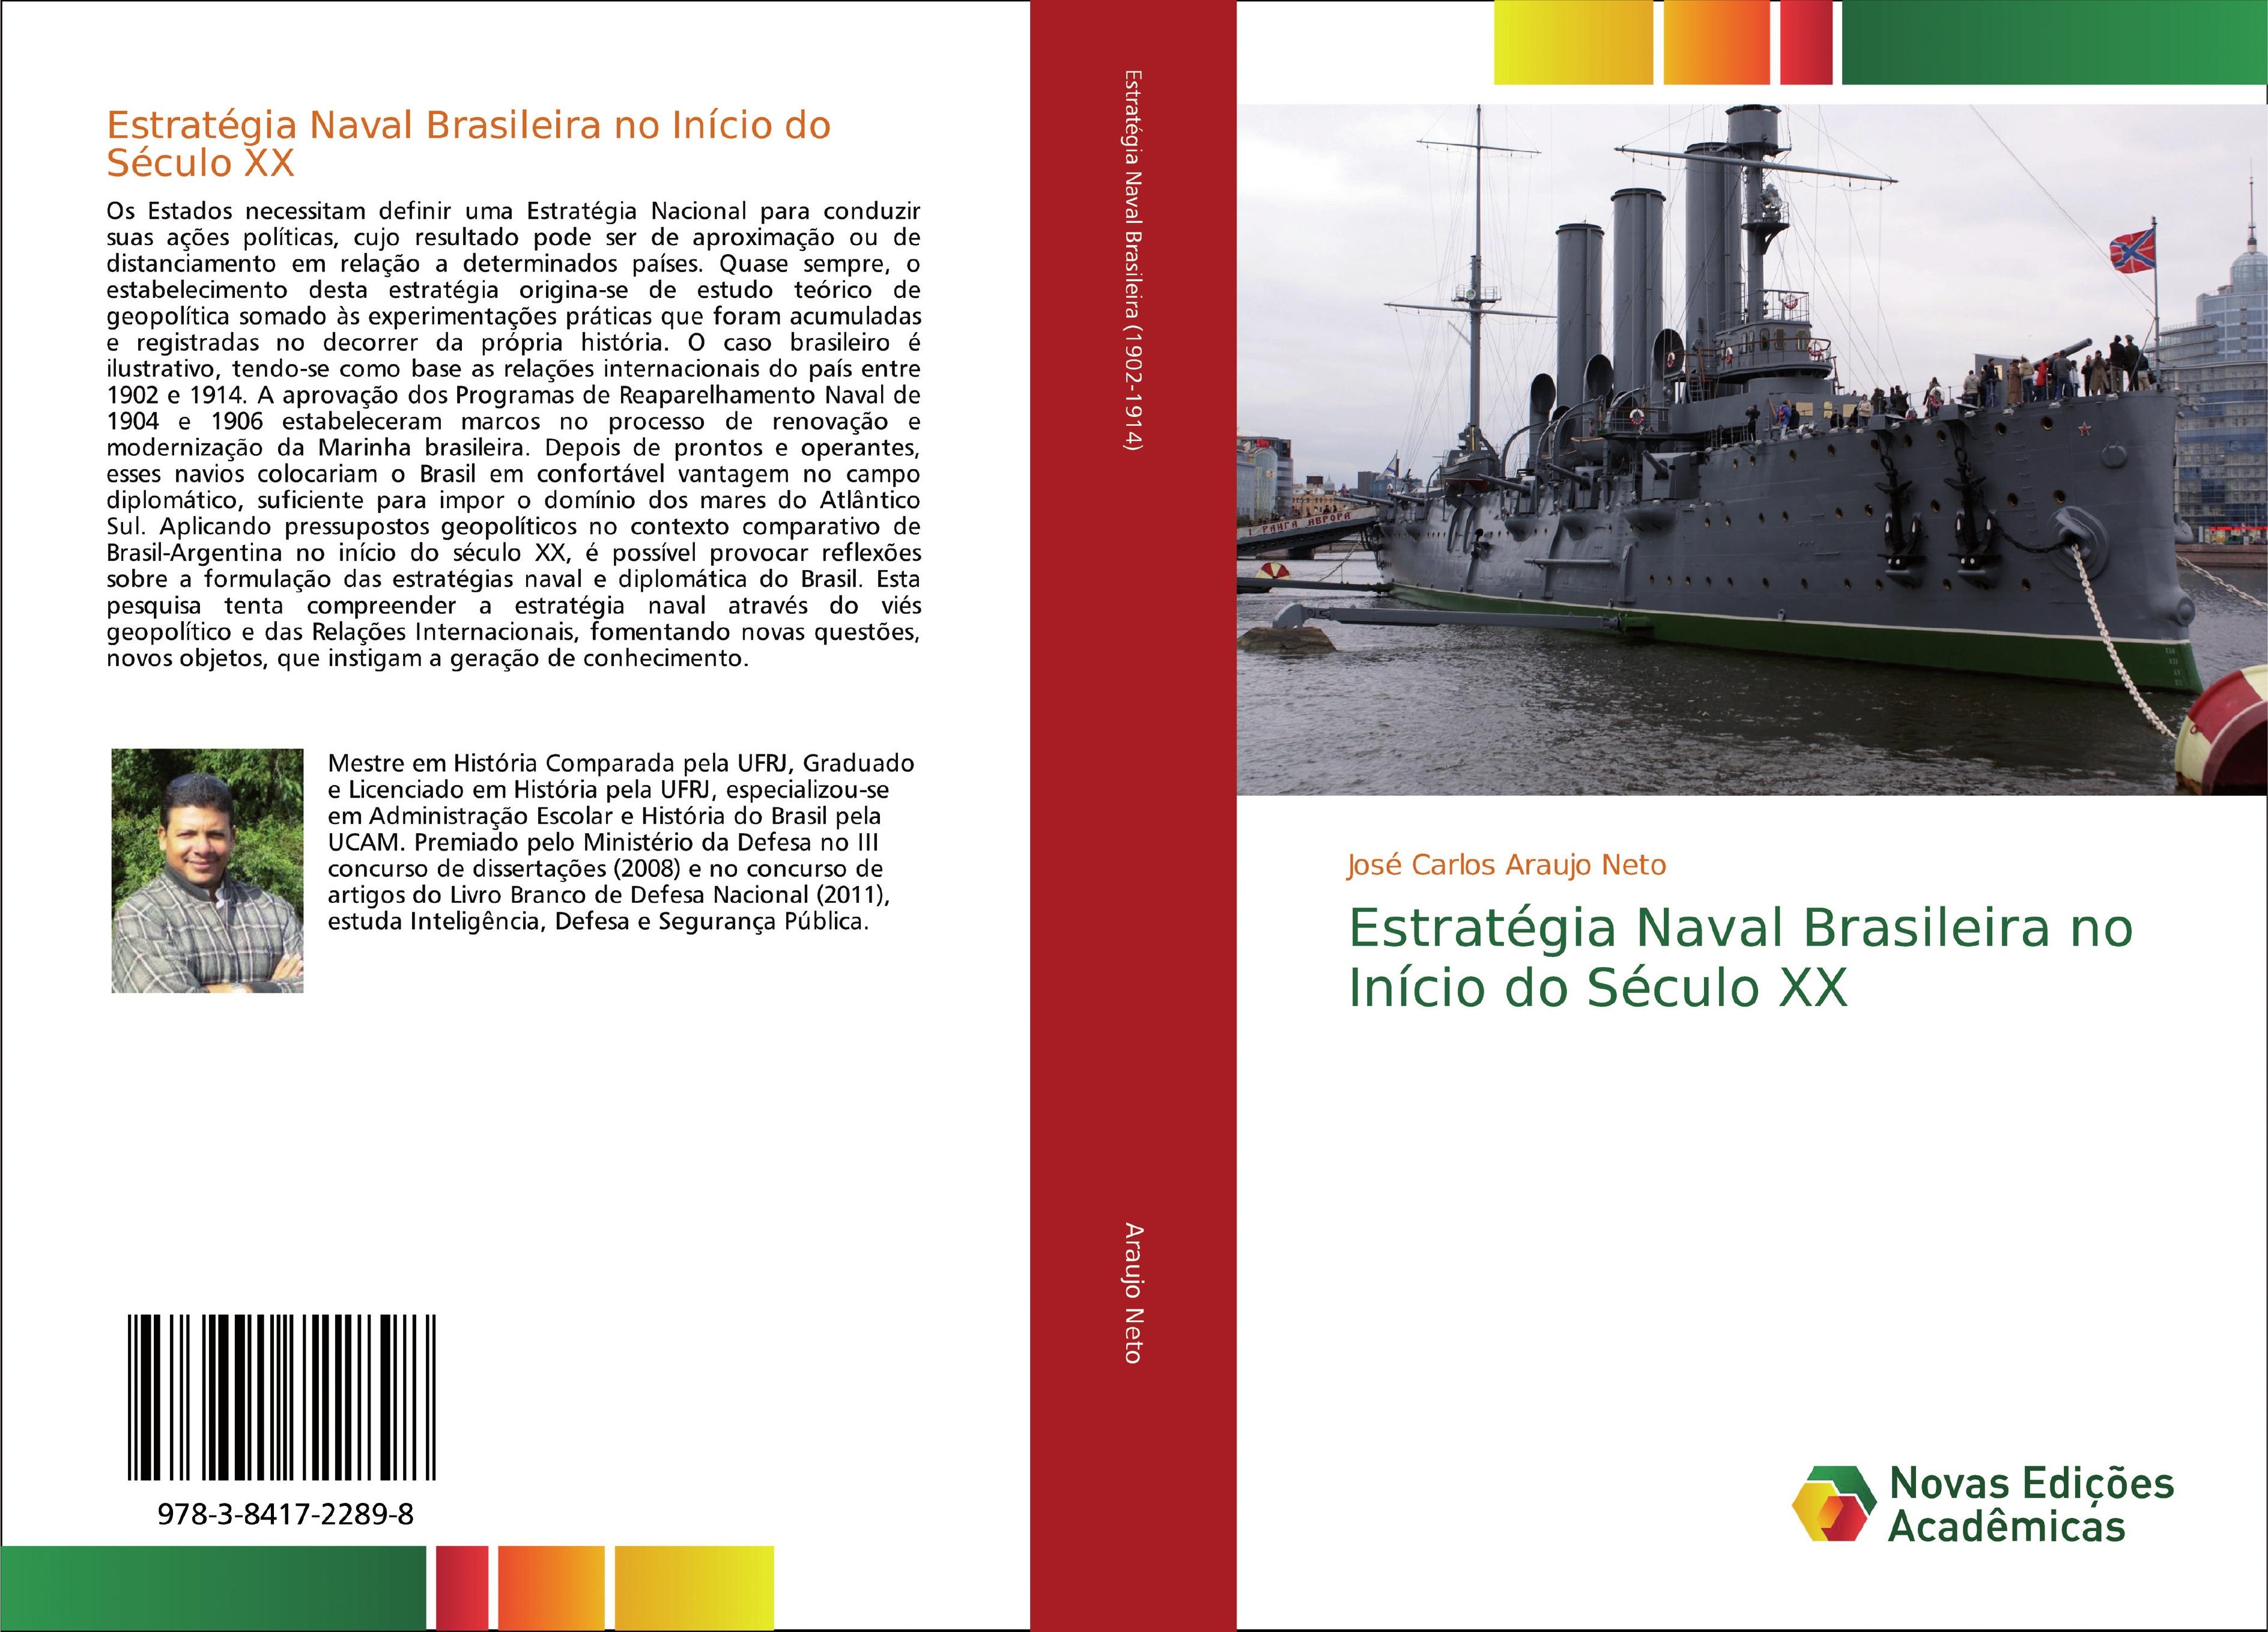 Estratégia Naval Brasileira no Início do Século XX  José Carlos Araujo Neto  Taschenbuch  Paperback  Portugiesisch  2020 - Araujo Neto, José Carlos